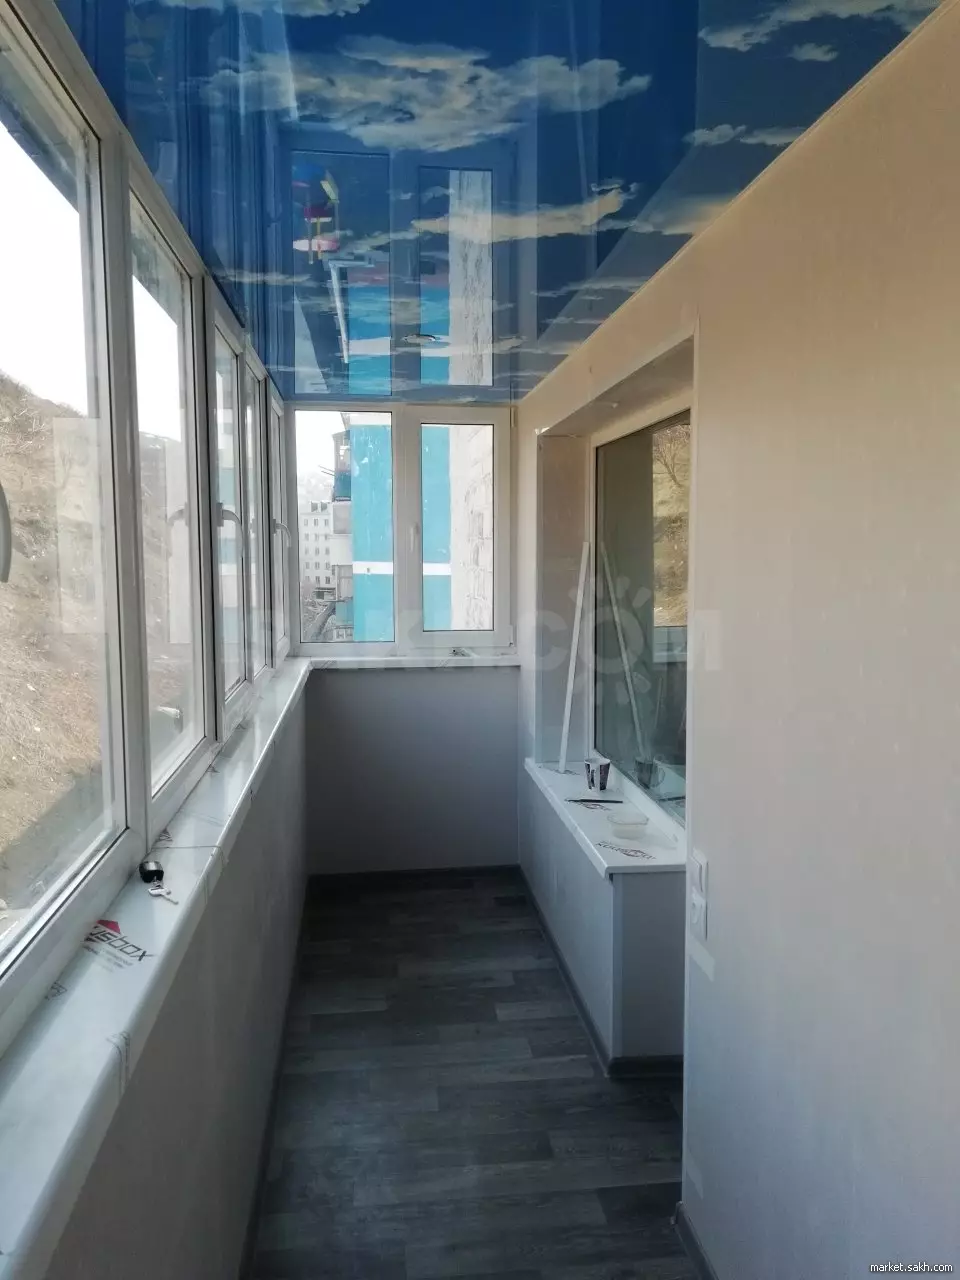 Натяжной потолок зимой на балконе: можно ли устанавливать, плюсы и минусы, отзывы